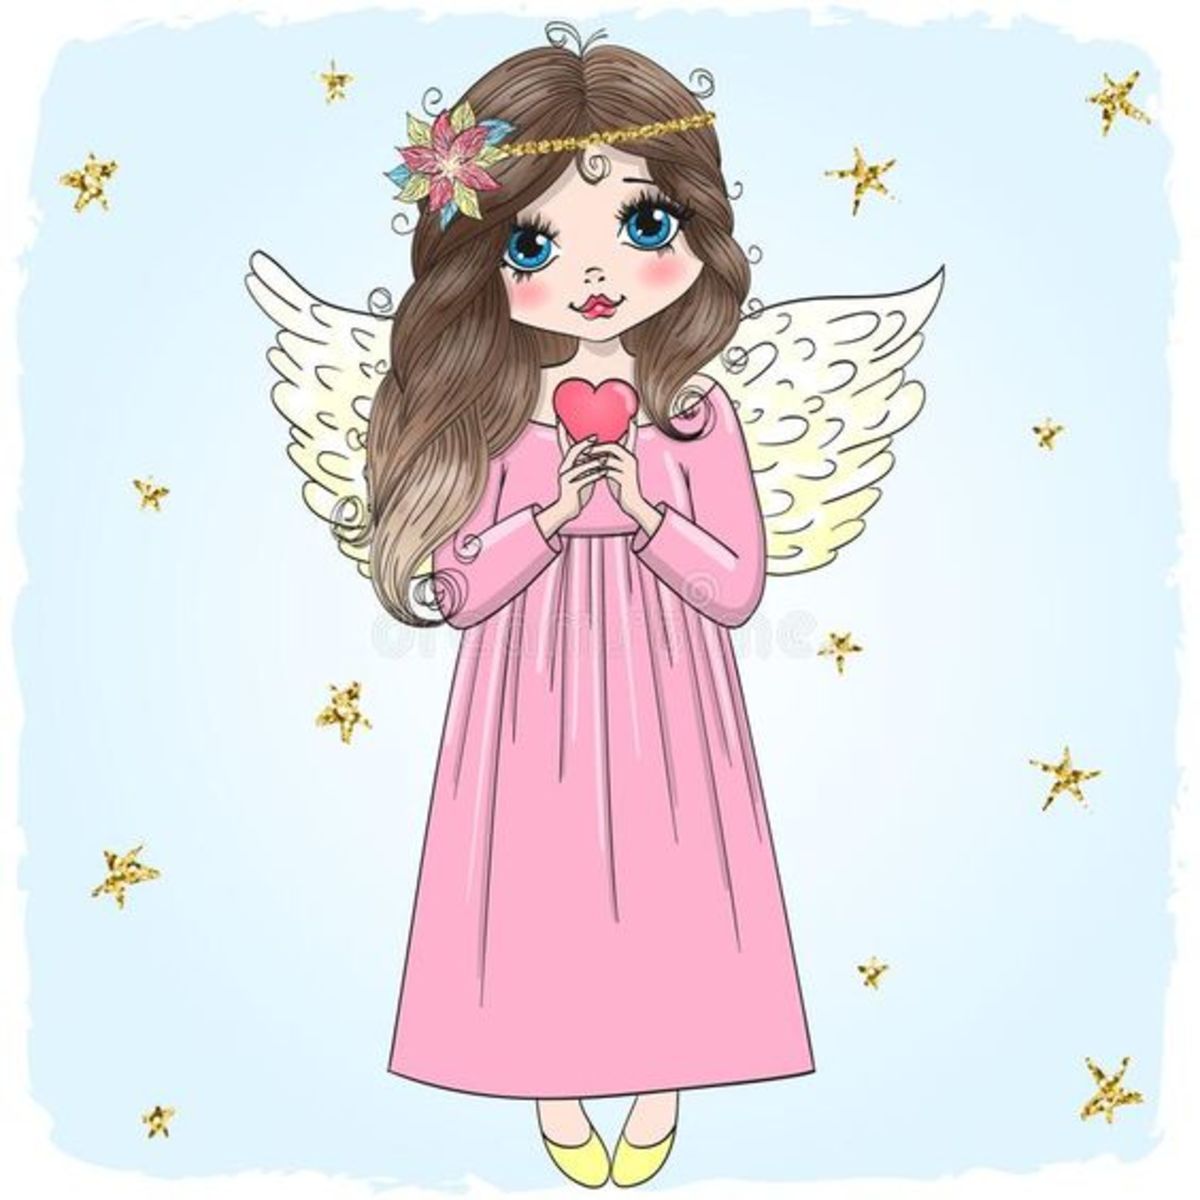 a-good-hearted-fairy